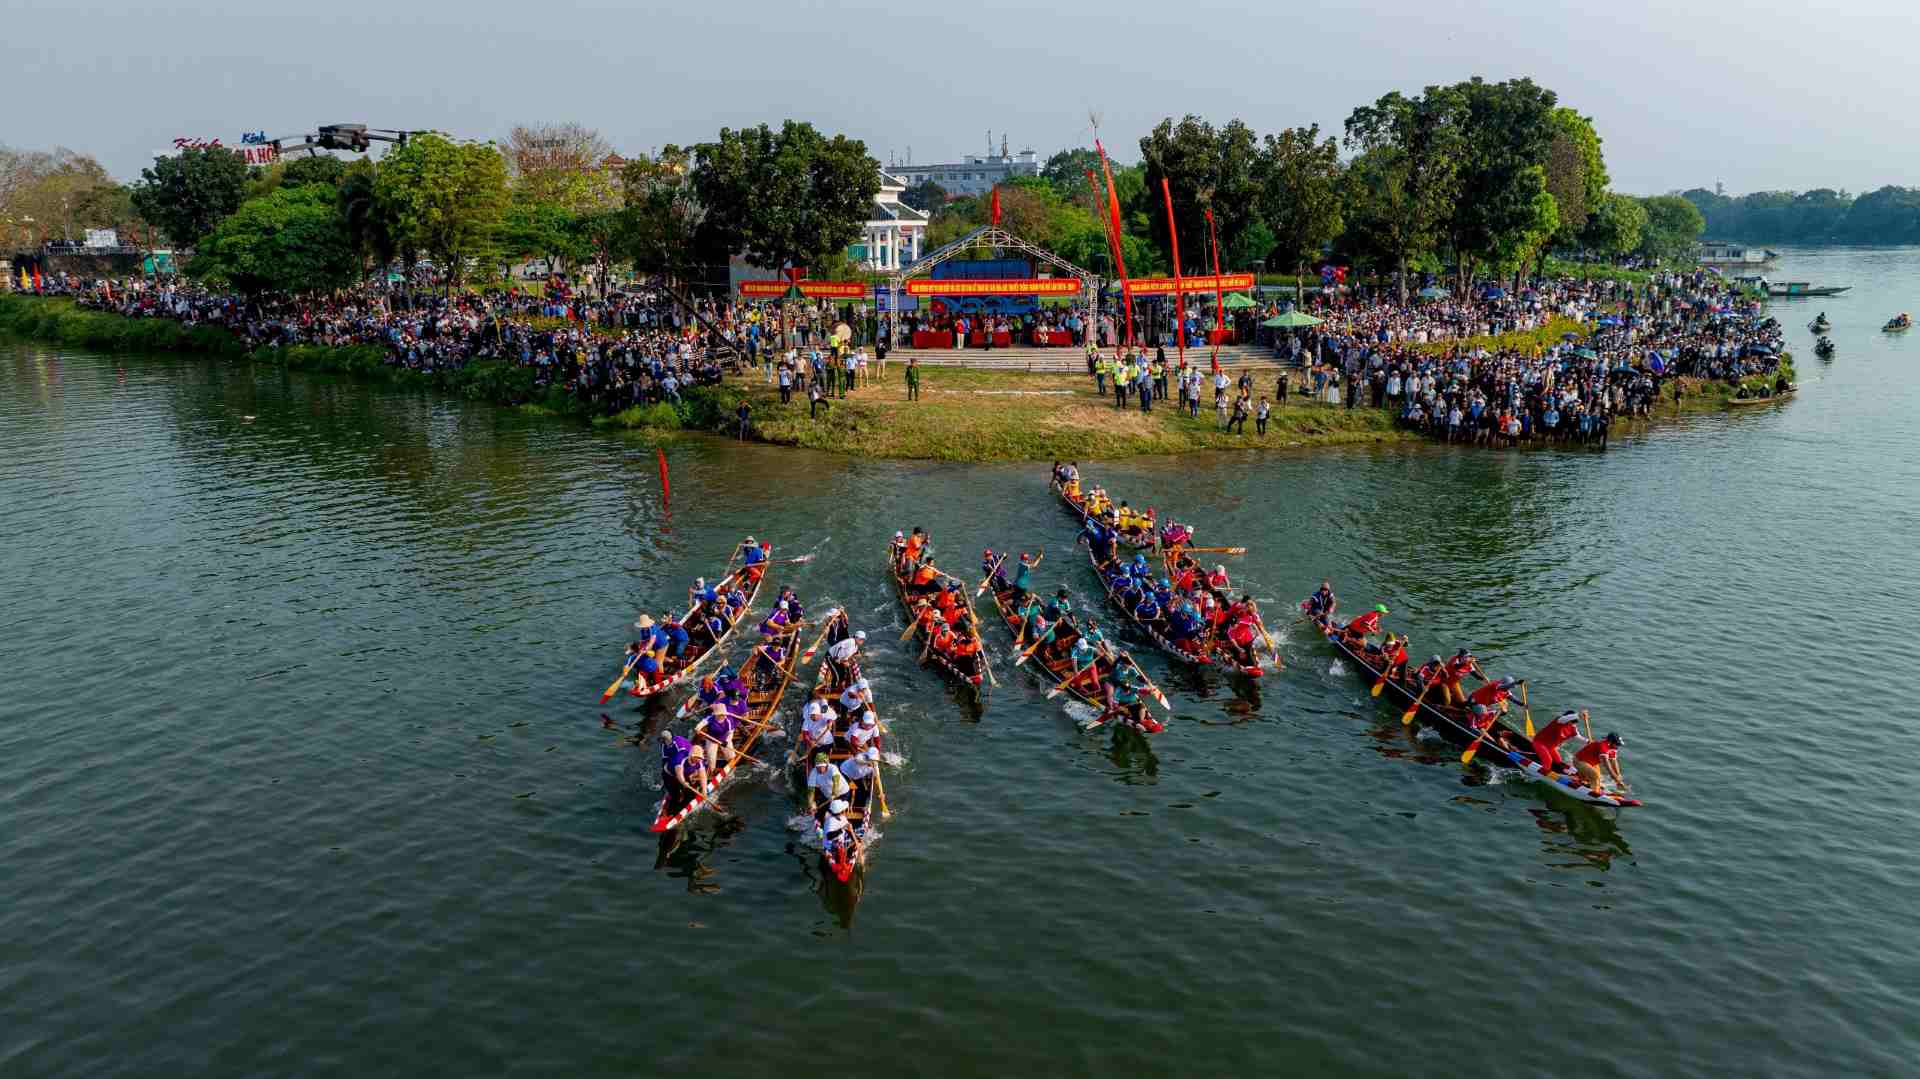 Giải đua năm nay được tổ chức tại công viên Trịnh Công Sơn, trên 2 con sông sông Đông Ba và sông Hương. 